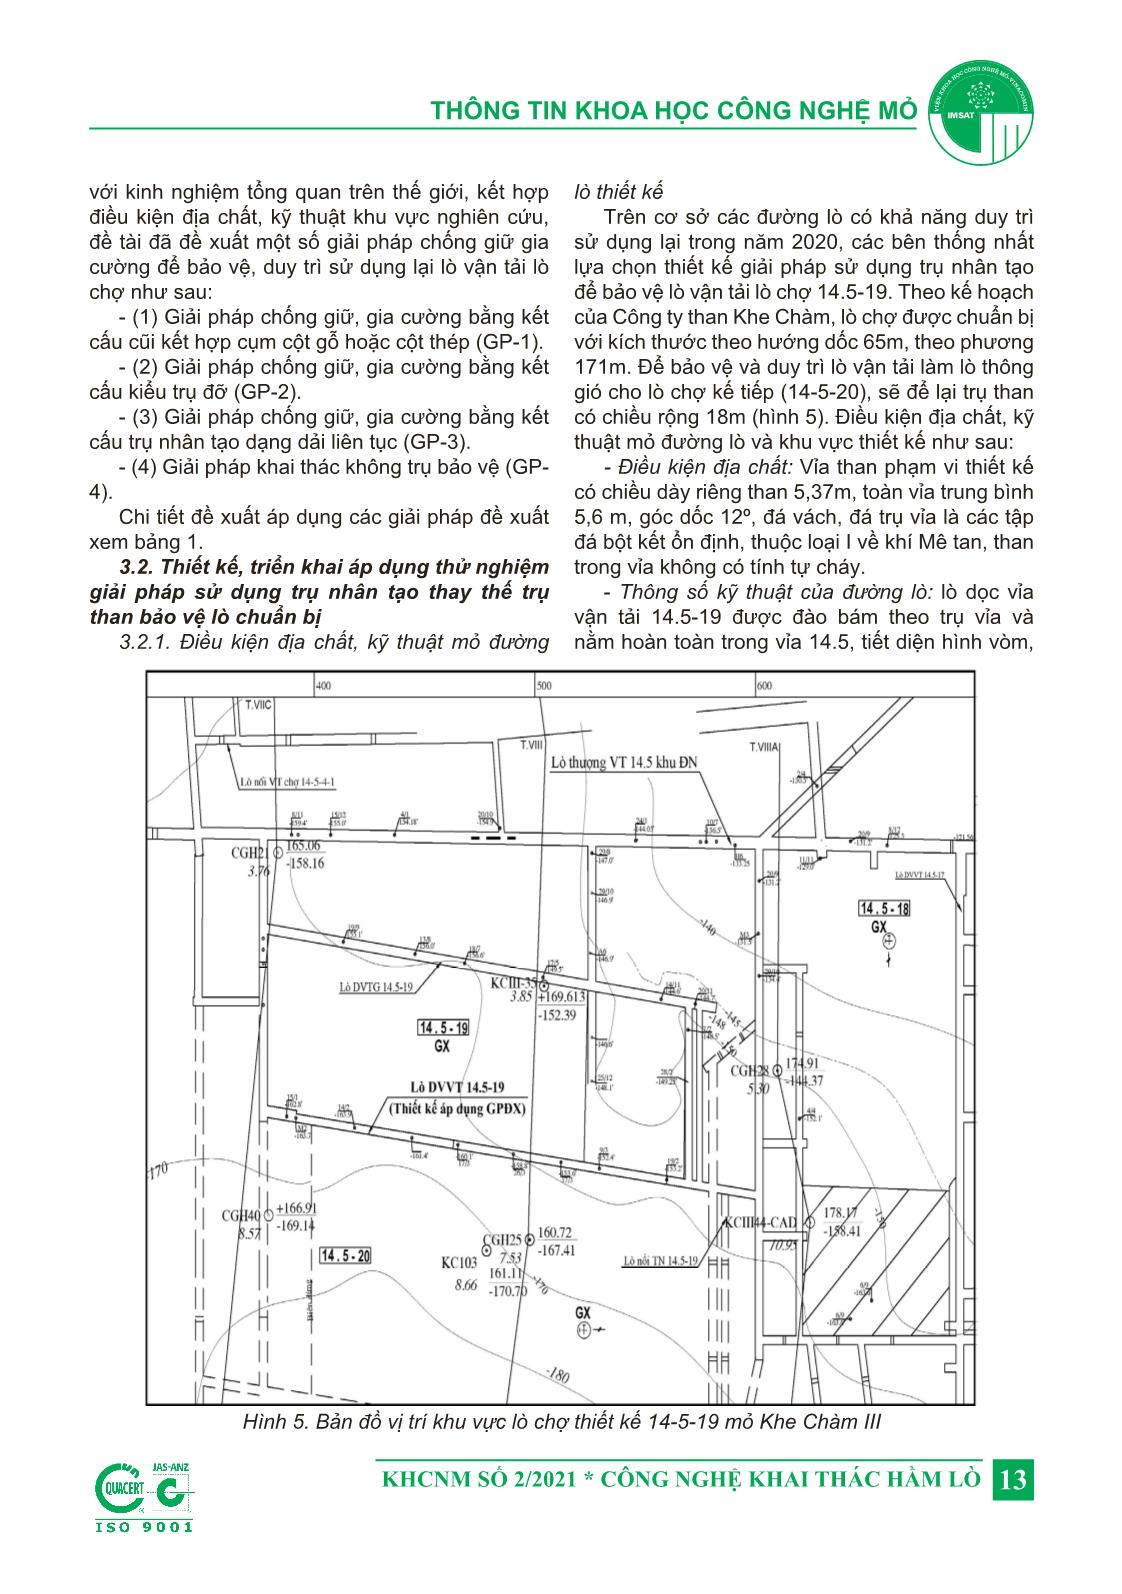 Nghiên cứu áp dụng thử nghiệm công nghệ sử dụng trụ nhân tạo bảo vệ lò chuẩn bị trong quá trình khai thác tại mỏ Khe Chàm III, Công ty than Khe Chàm - TKV trang 5